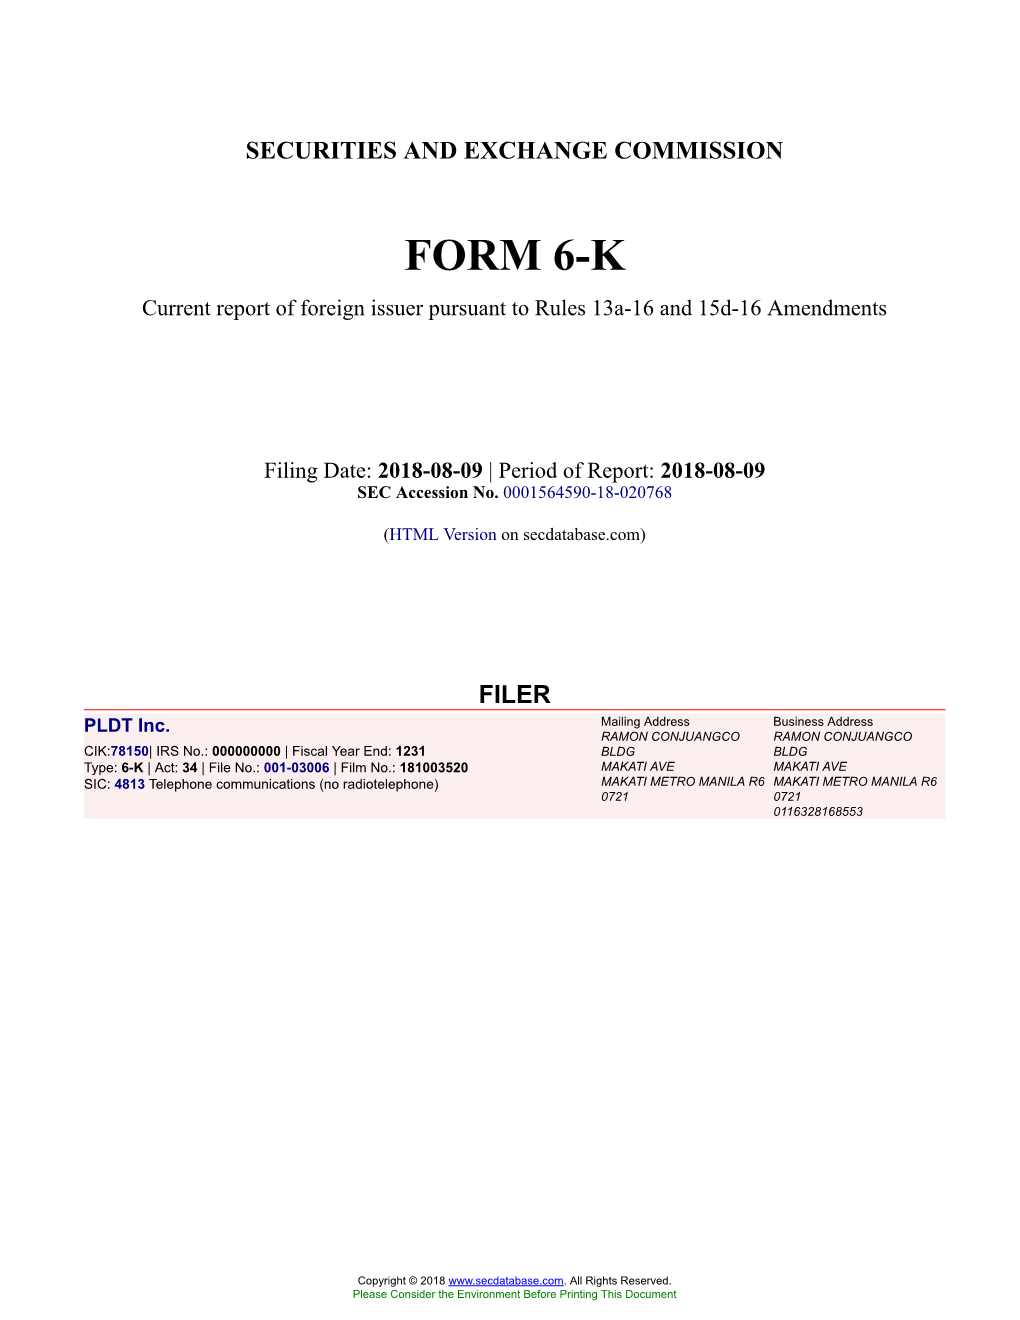 PLDT Inc. Form 6-K Current Event Report Filed 2018-08-09